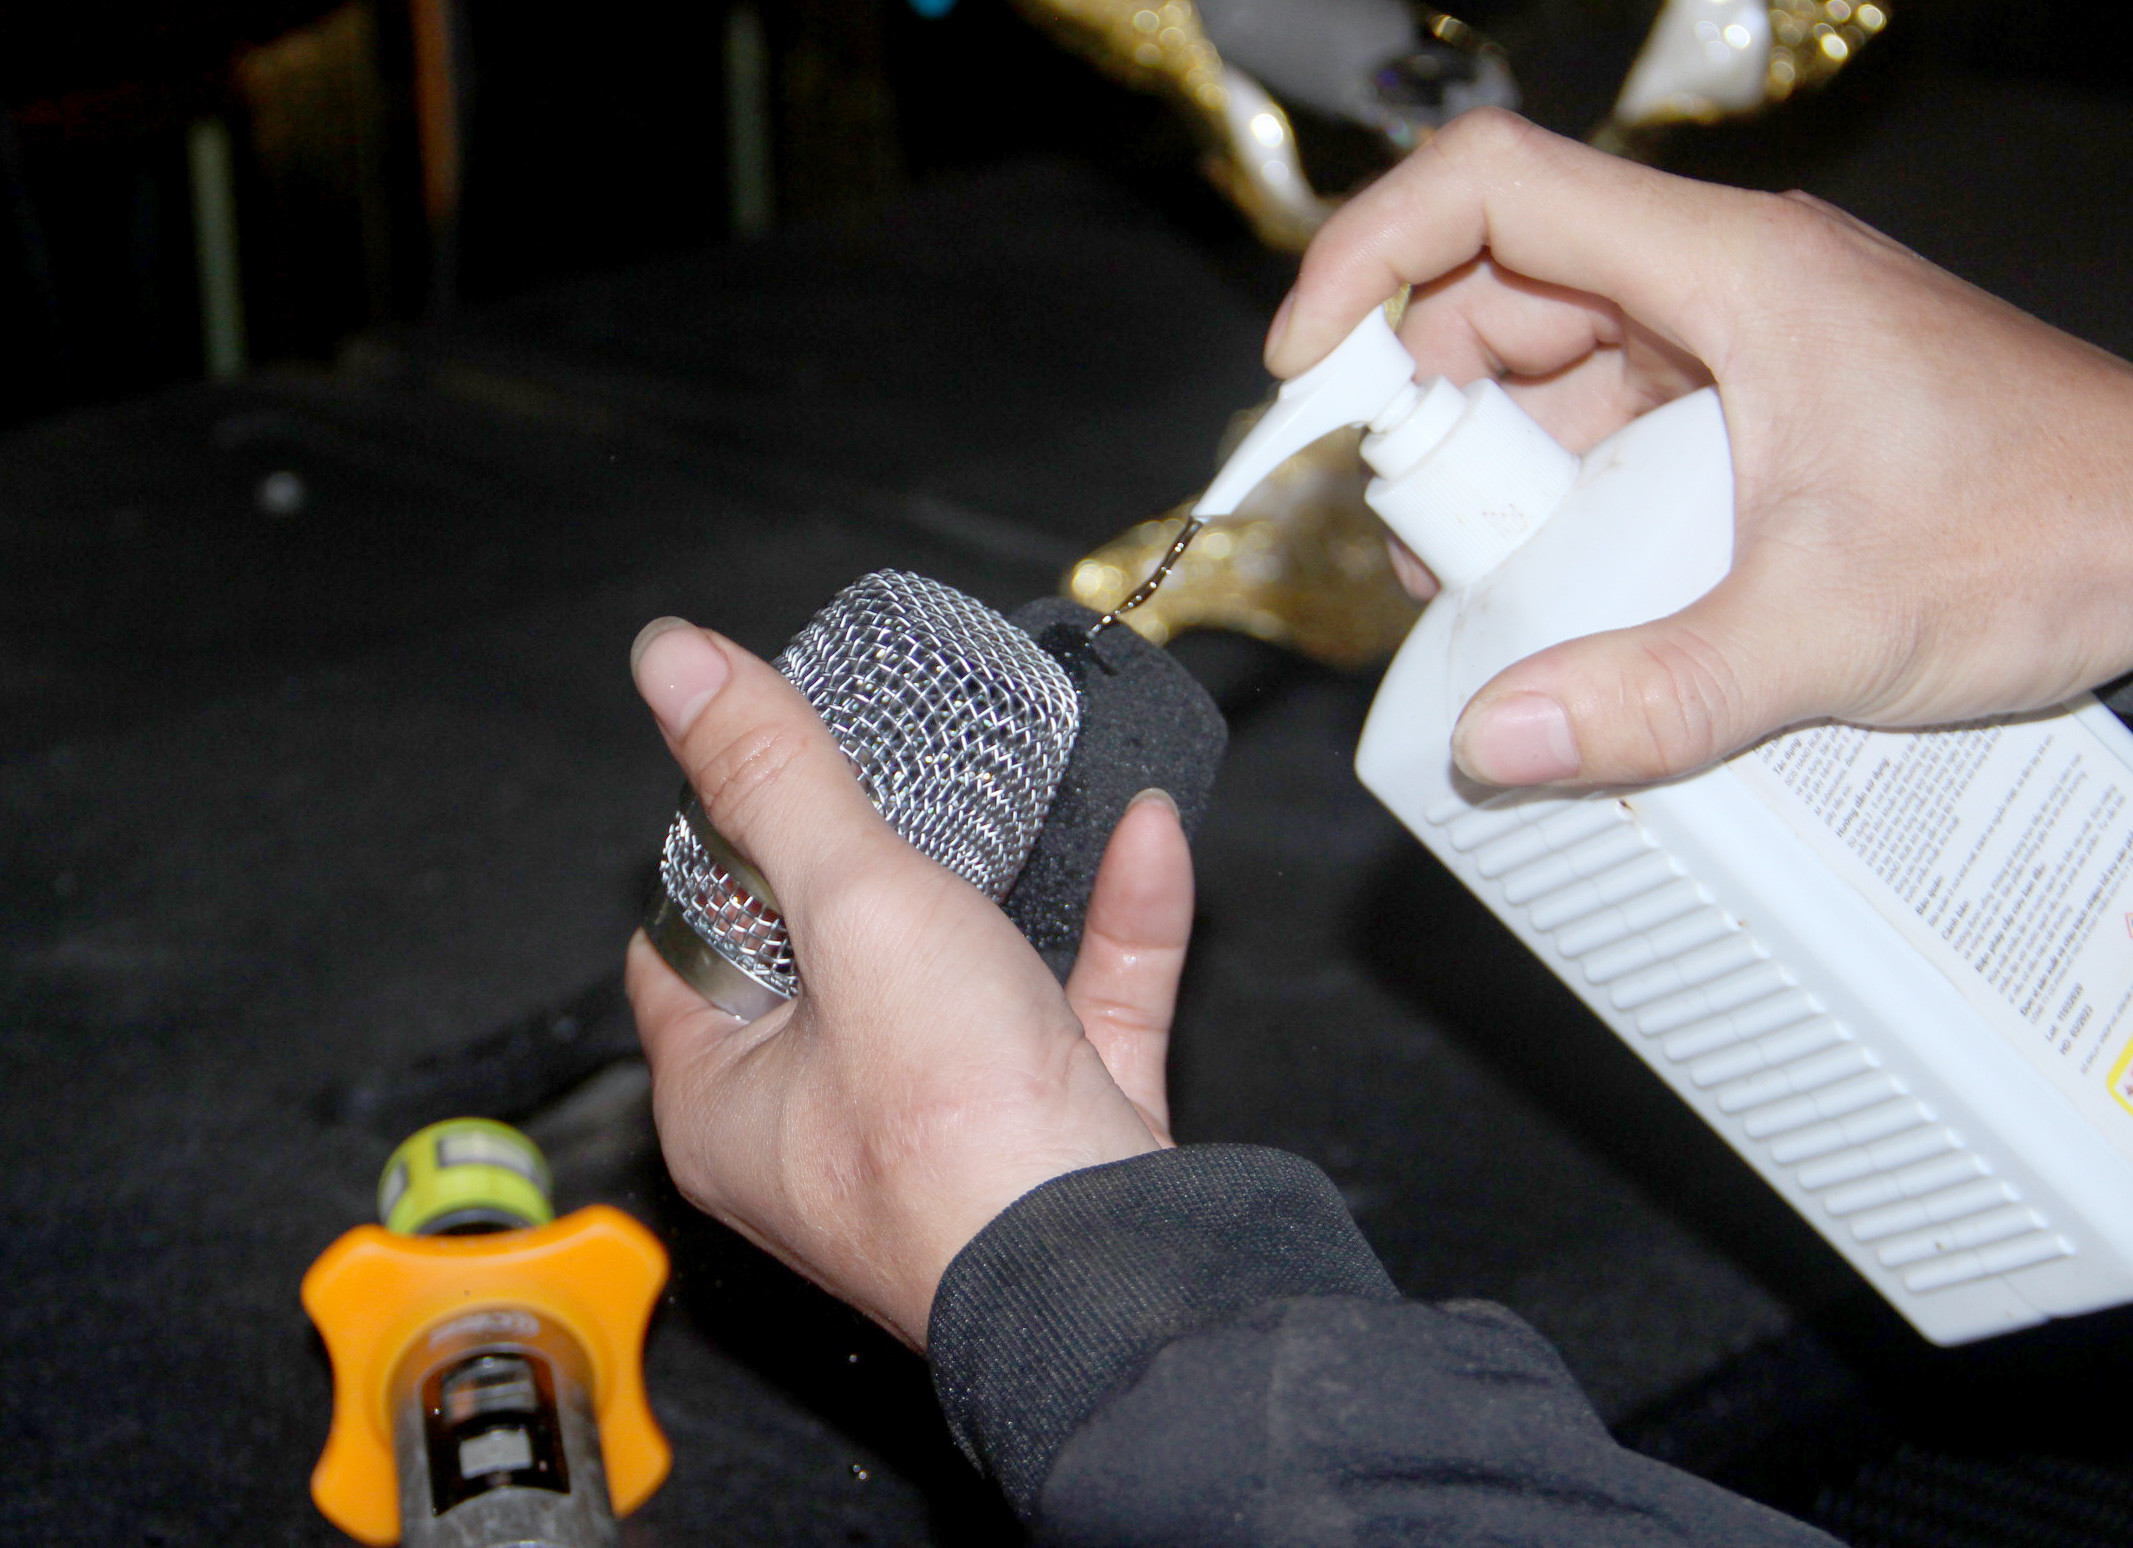 Các thiết bị phục vụ hát karaoke đều phải được vệ sinh, sát khuẩn sạch sẽ để giảm nguy cơ lây nhiễm dịch bệnh. Ảnh: Q.A